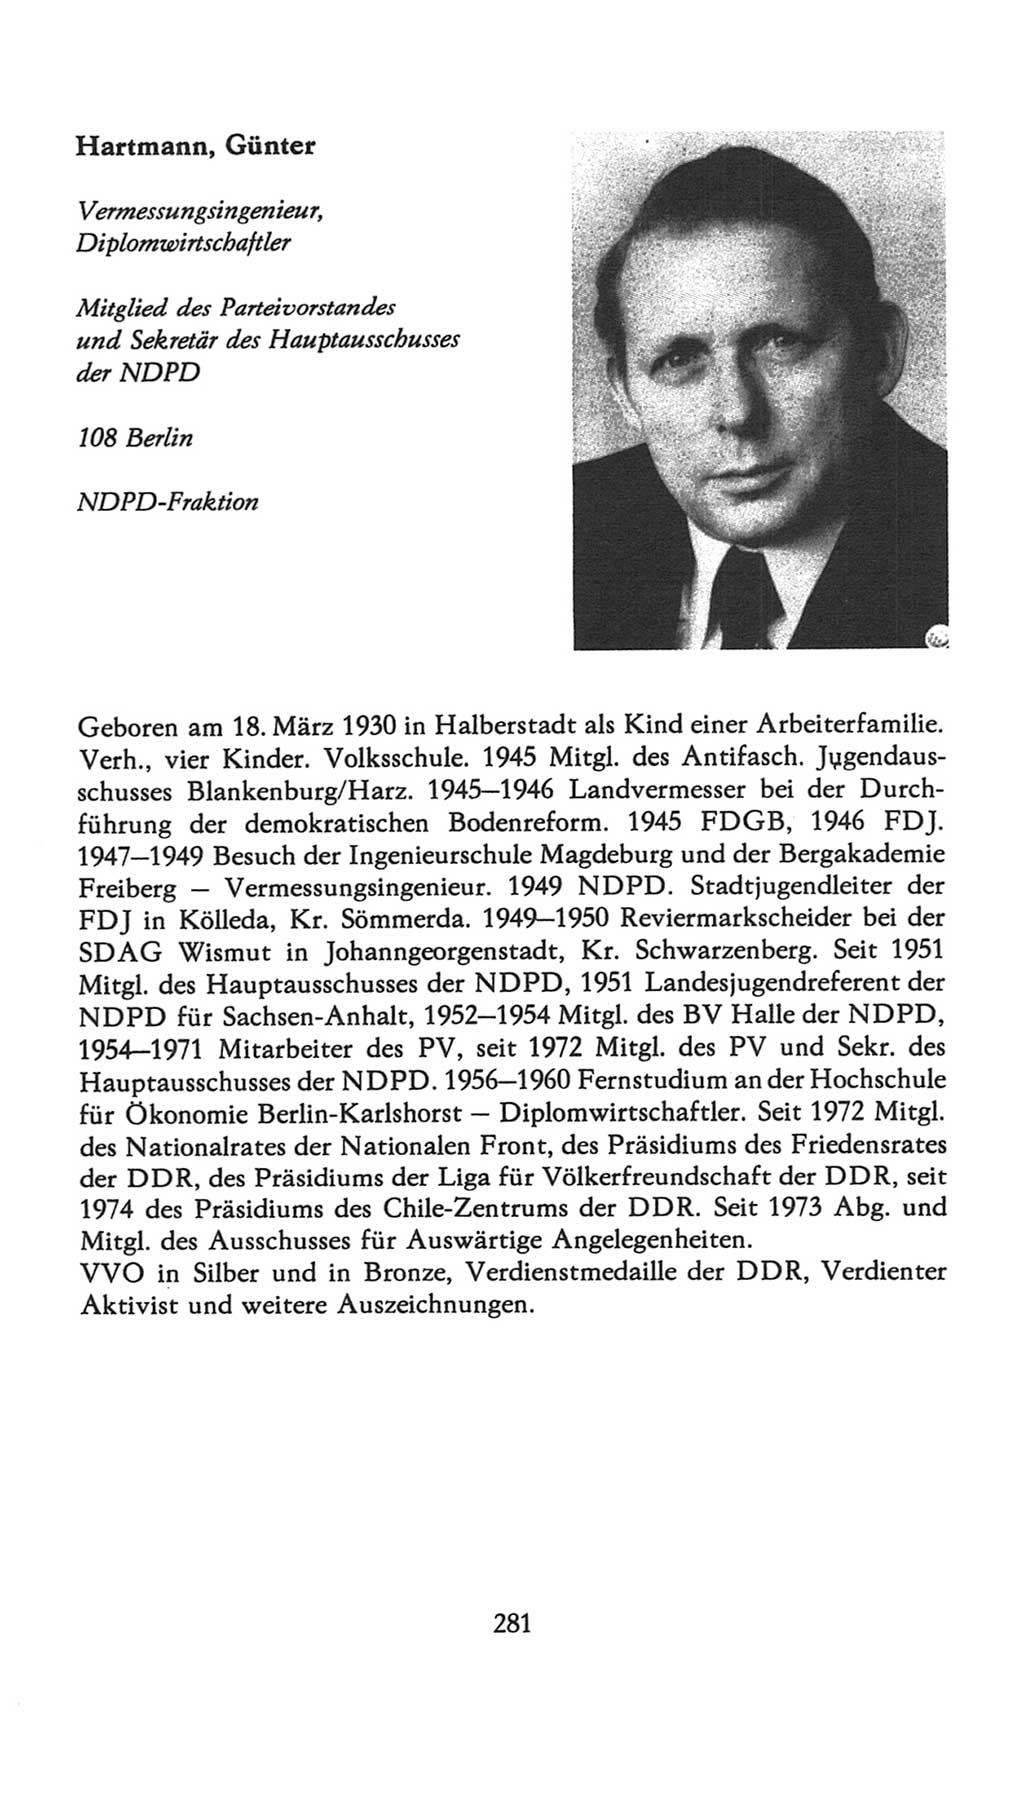 Volkskammer (VK) der Deutschen Demokratischen Republik (DDR), 7. Wahlperiode 1976-1981, Seite 281 (VK. DDR 7. WP. 1976-1981, S. 281)